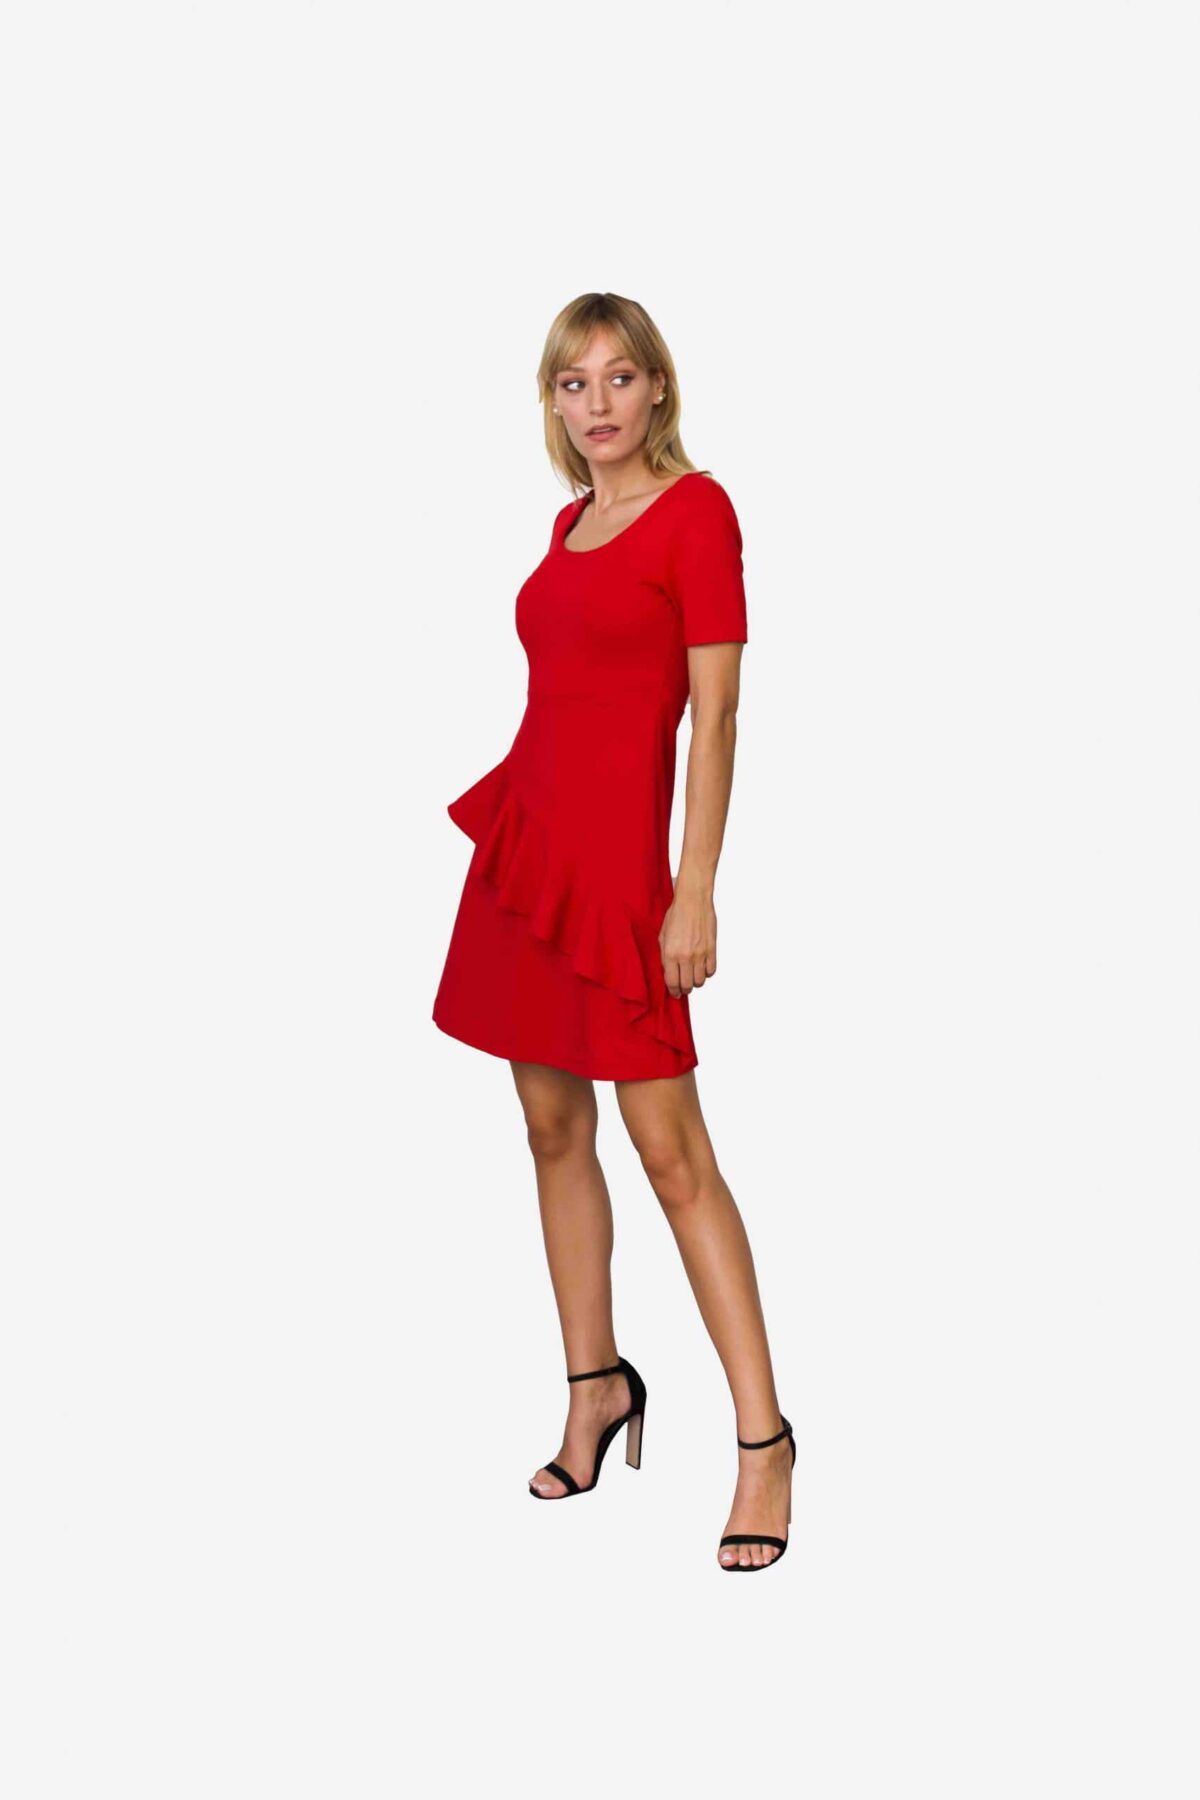 Kleid Loretta von SANOGE. Feminines Etuikleid in rot mit Volant und kurzem Arm. Knielang. Aus rotem Premium Jersey.